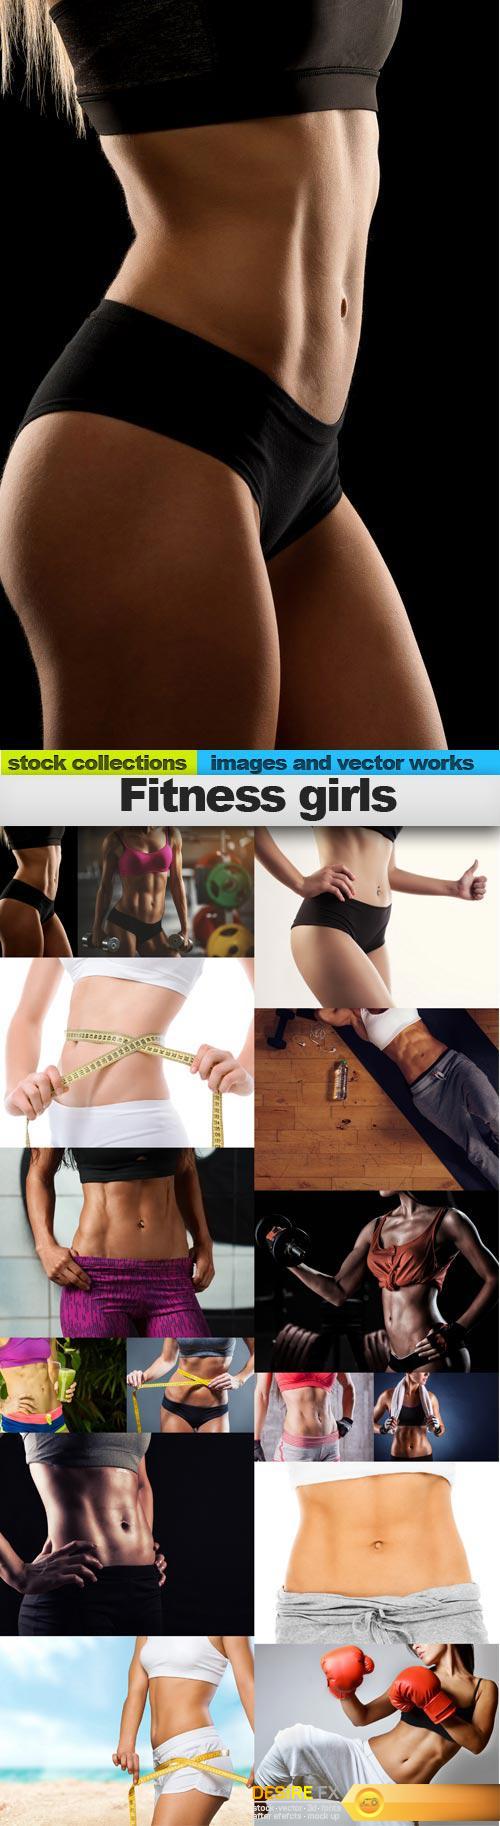 Fitness girls, 15 x UHQ JPEG